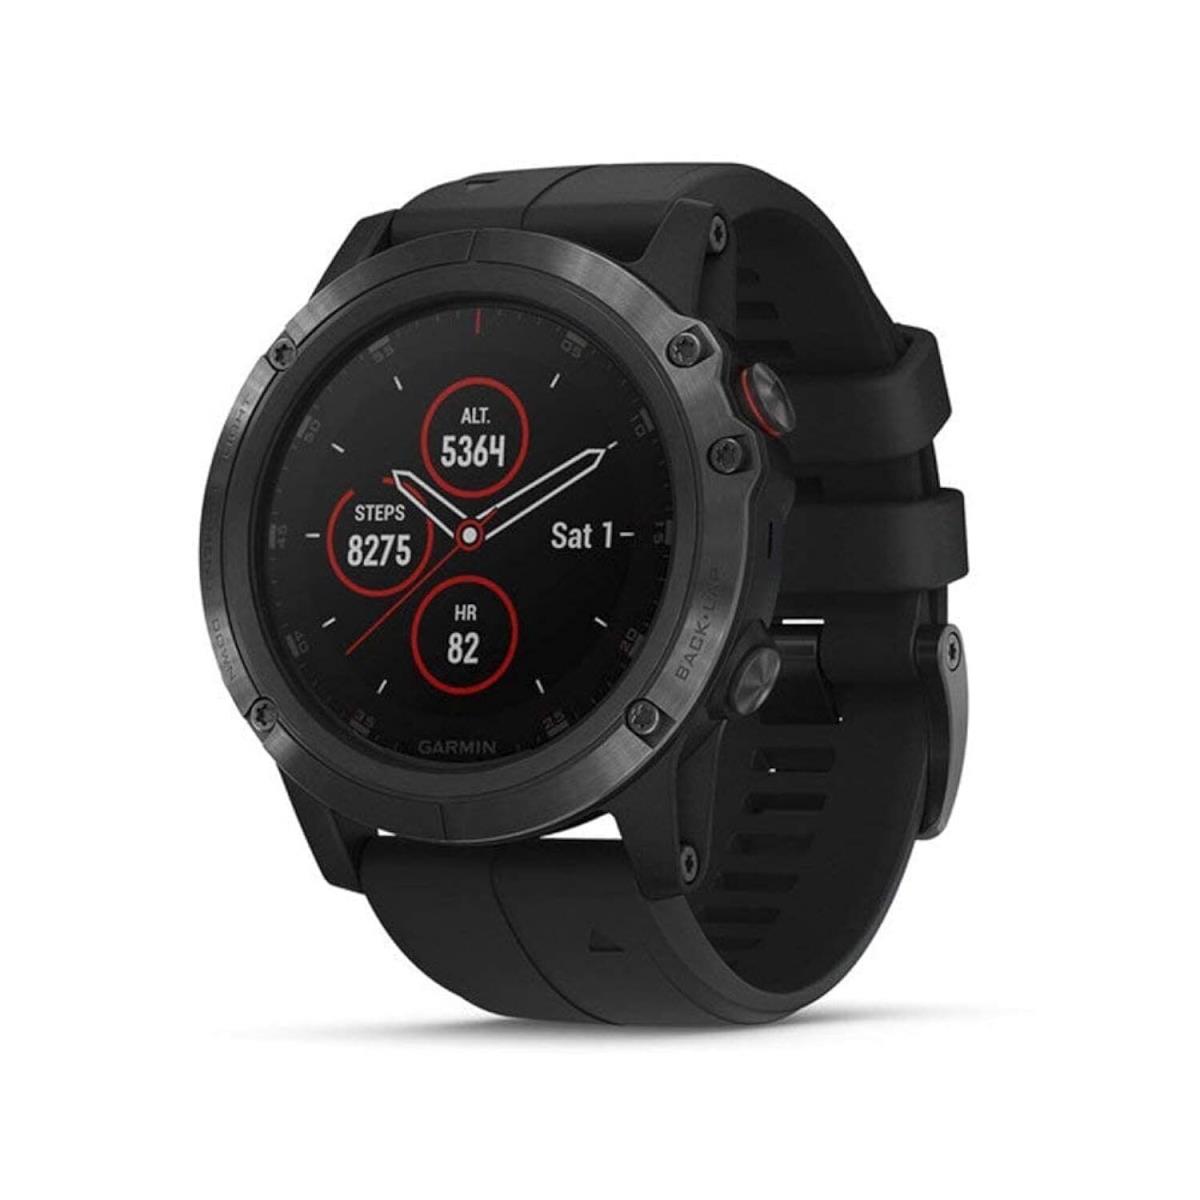 Garmin Fenix 5X Plus Ultimate Multisport Gps Smartwatch Features Color Topo